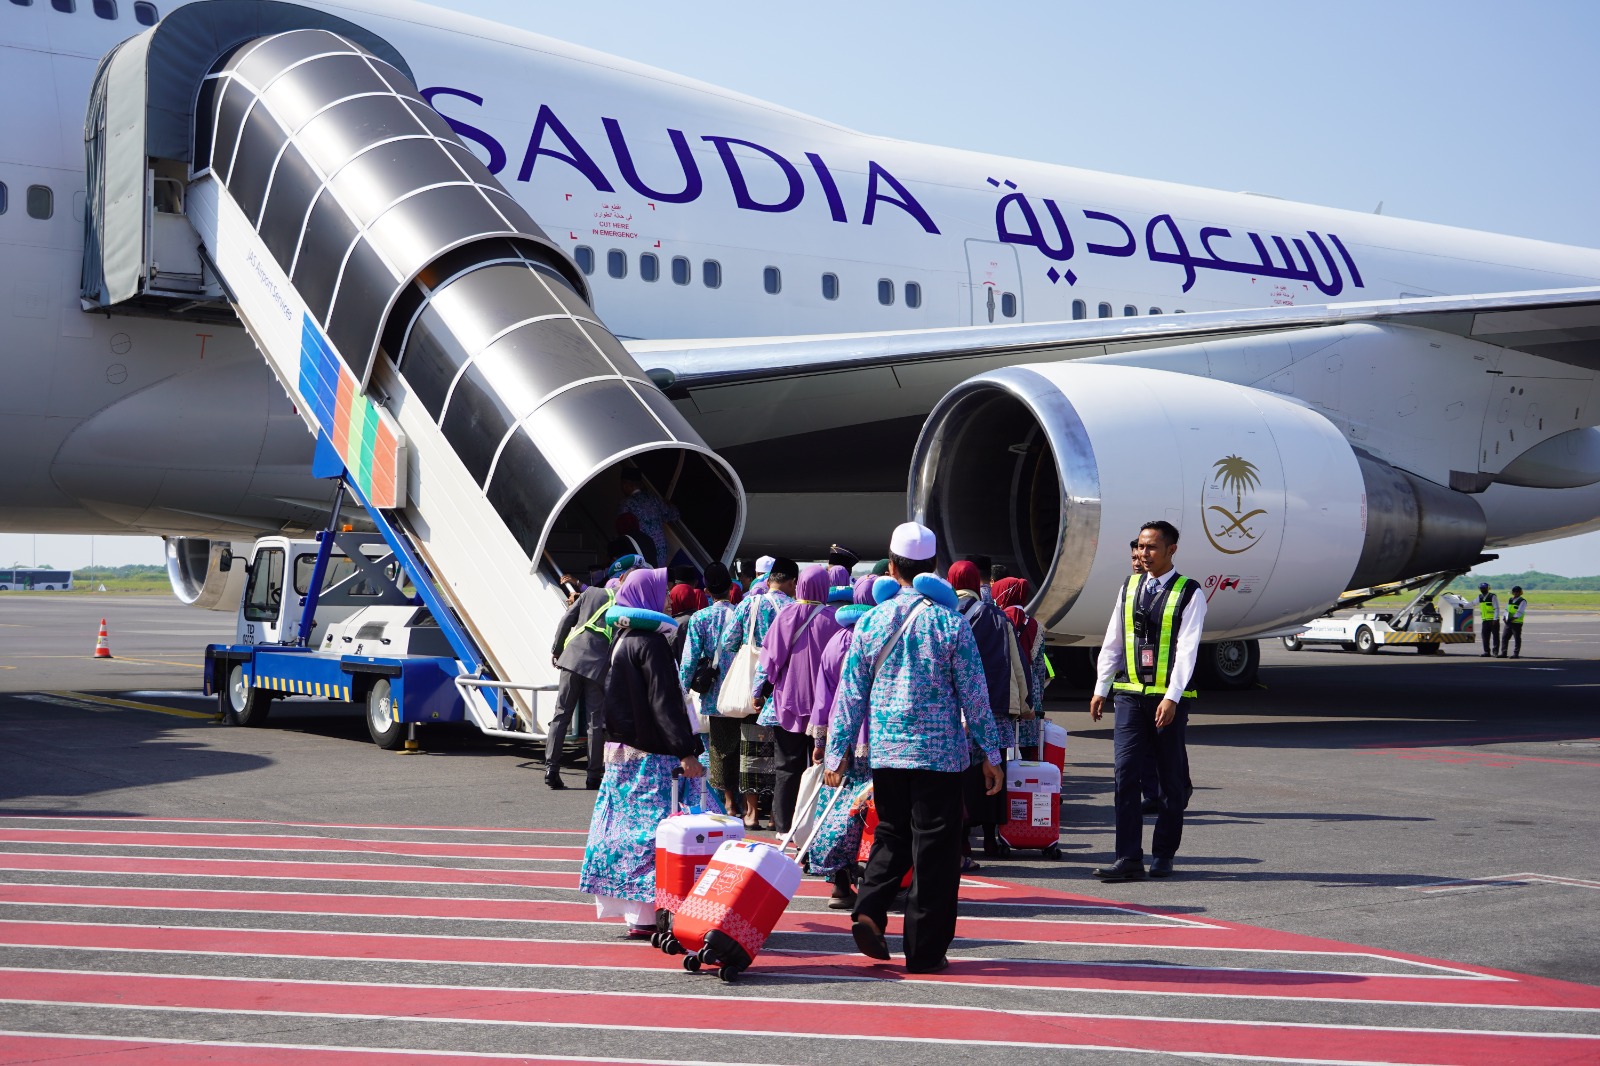 Jemaah haji Indonesia terlambat menuju Tanah Suci akibat perubahan jadwal maskapai Saudi Airlines.